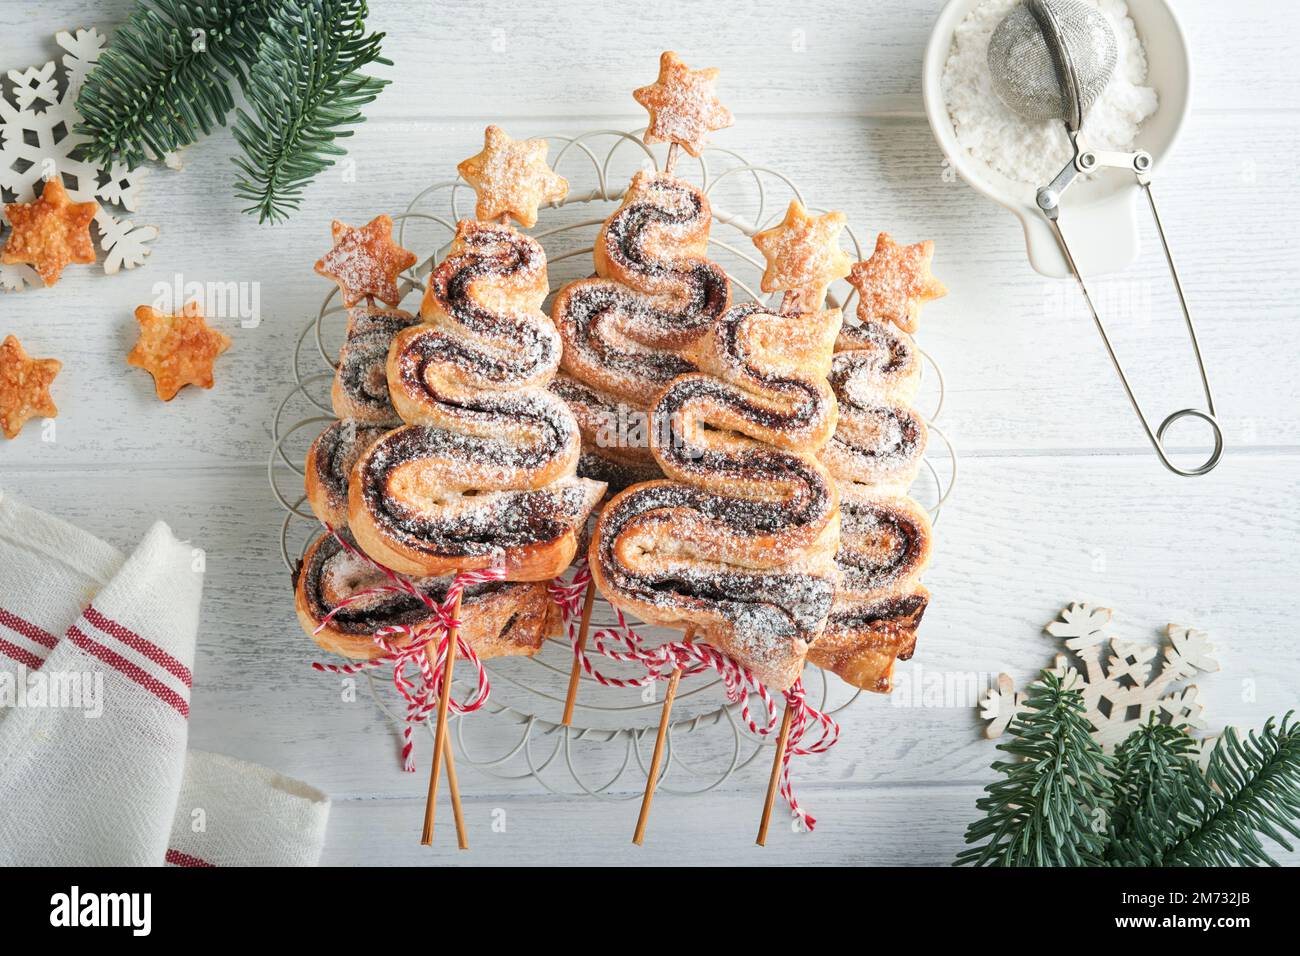 Gâteau feuilleté en forme d'arbre de Noël avec garniture au chocolat, poudre de sucre et sucettes sur fond de bois blanc ancien. Noël, nouvel an Banque D'Images